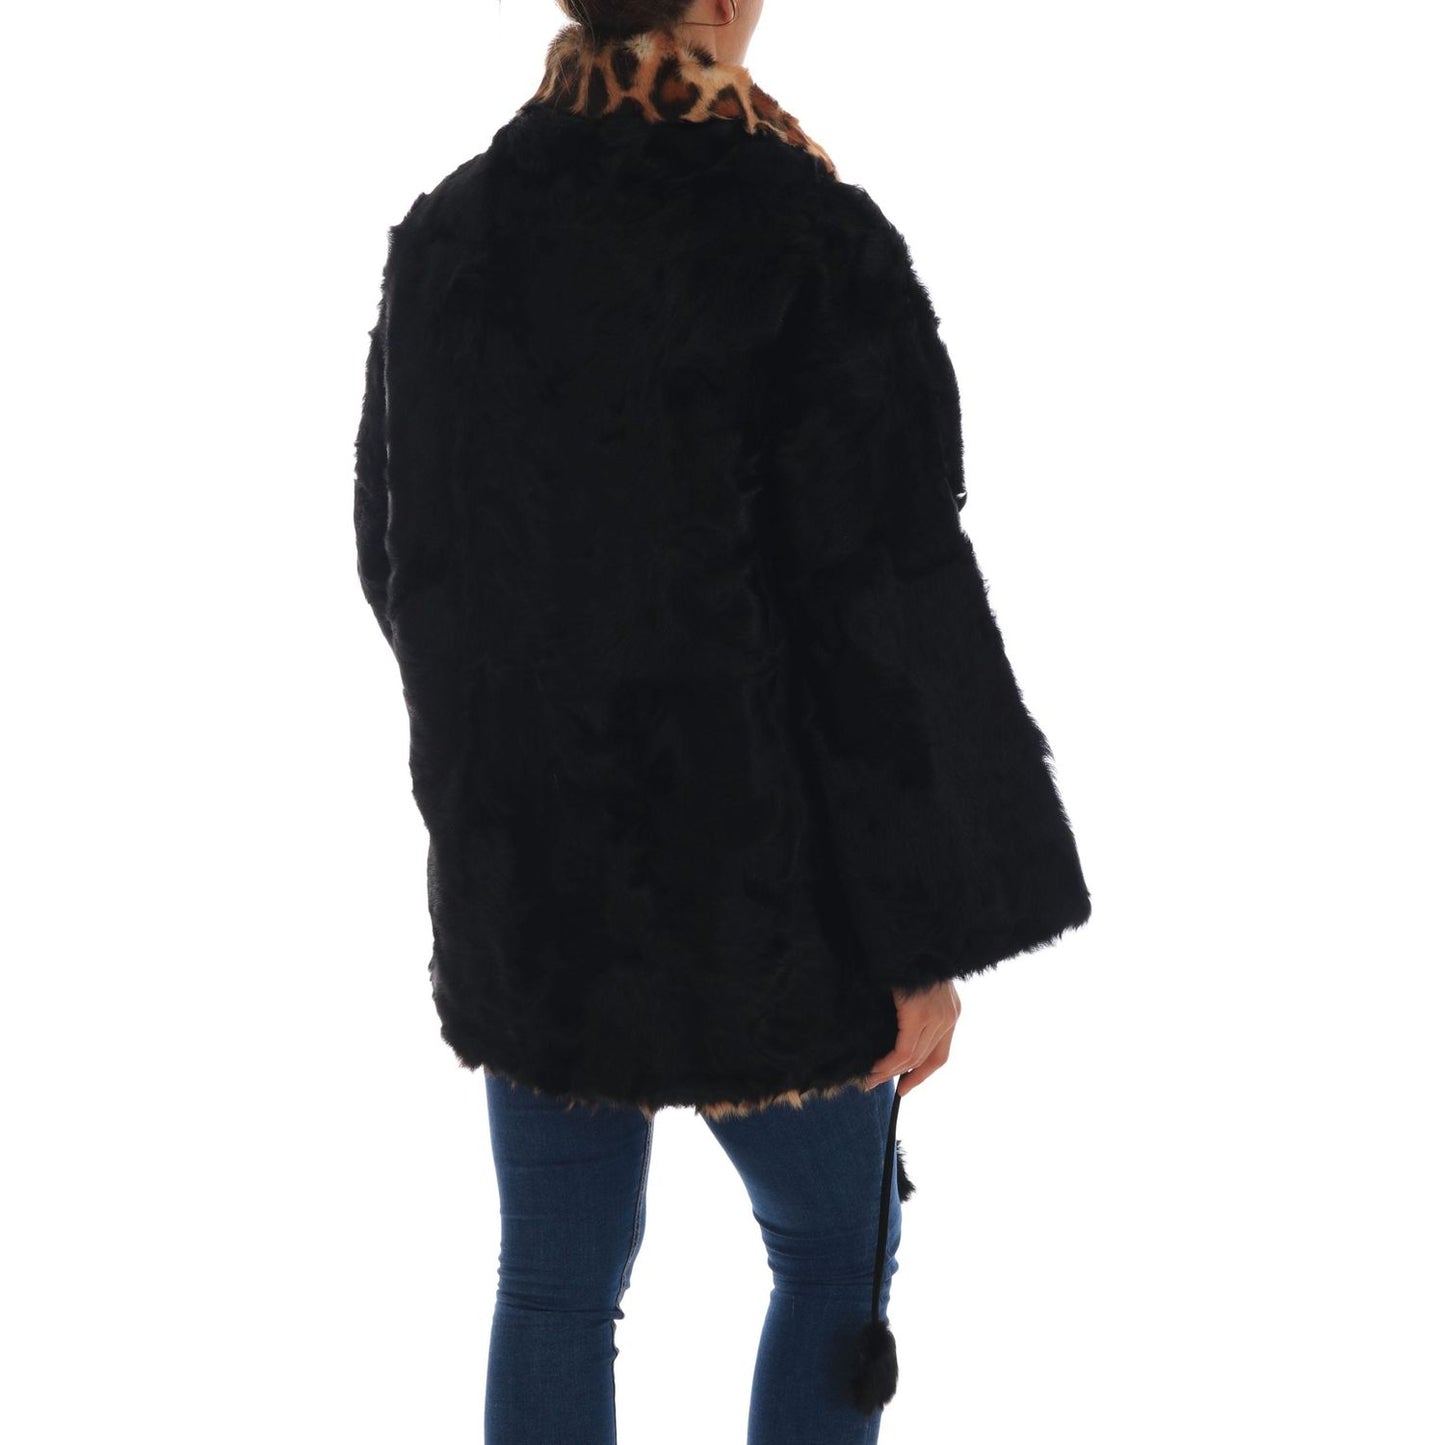 Dolce & Gabbana Elegant Black Lamb Fur Short Coat black-lamb-leopard-print-fur-coat-jacket 654682-black-lamb-leopard-print-fur-coat-jacket-3.jpg